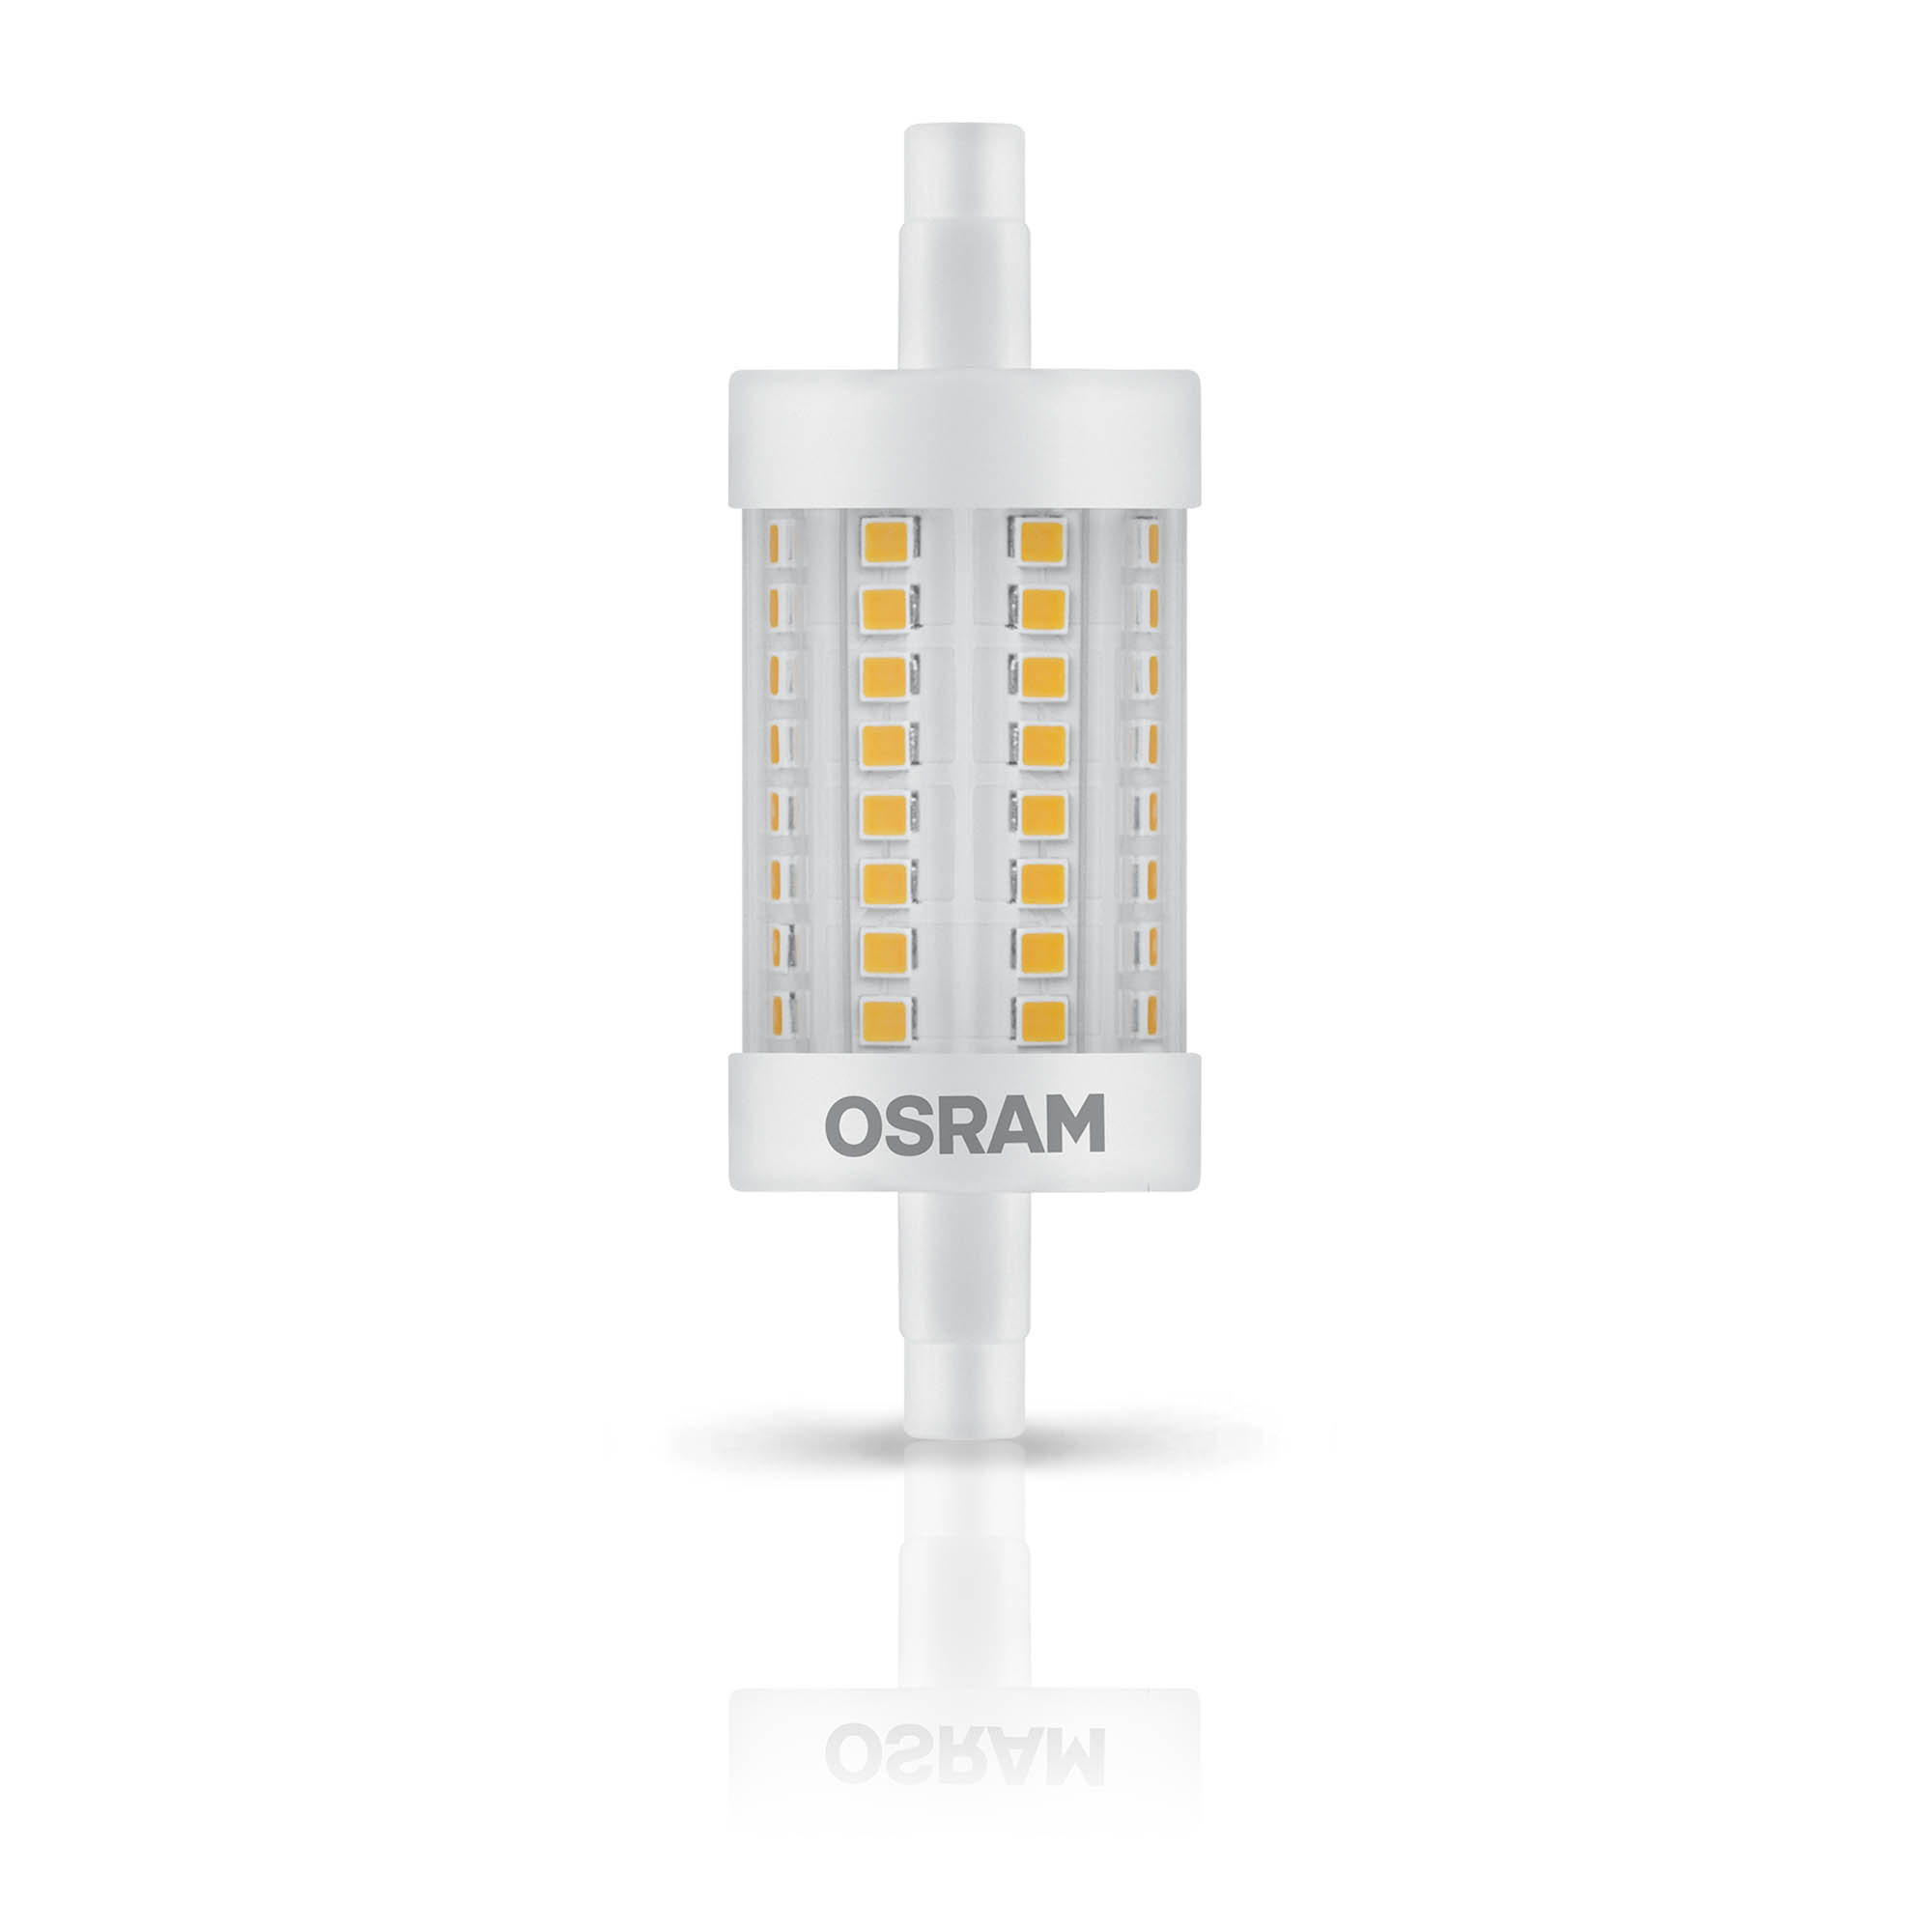 LED lamp Osram LED STAR LINE 78 HS 60 7W 827 R7S 78mm 2700K 806lm